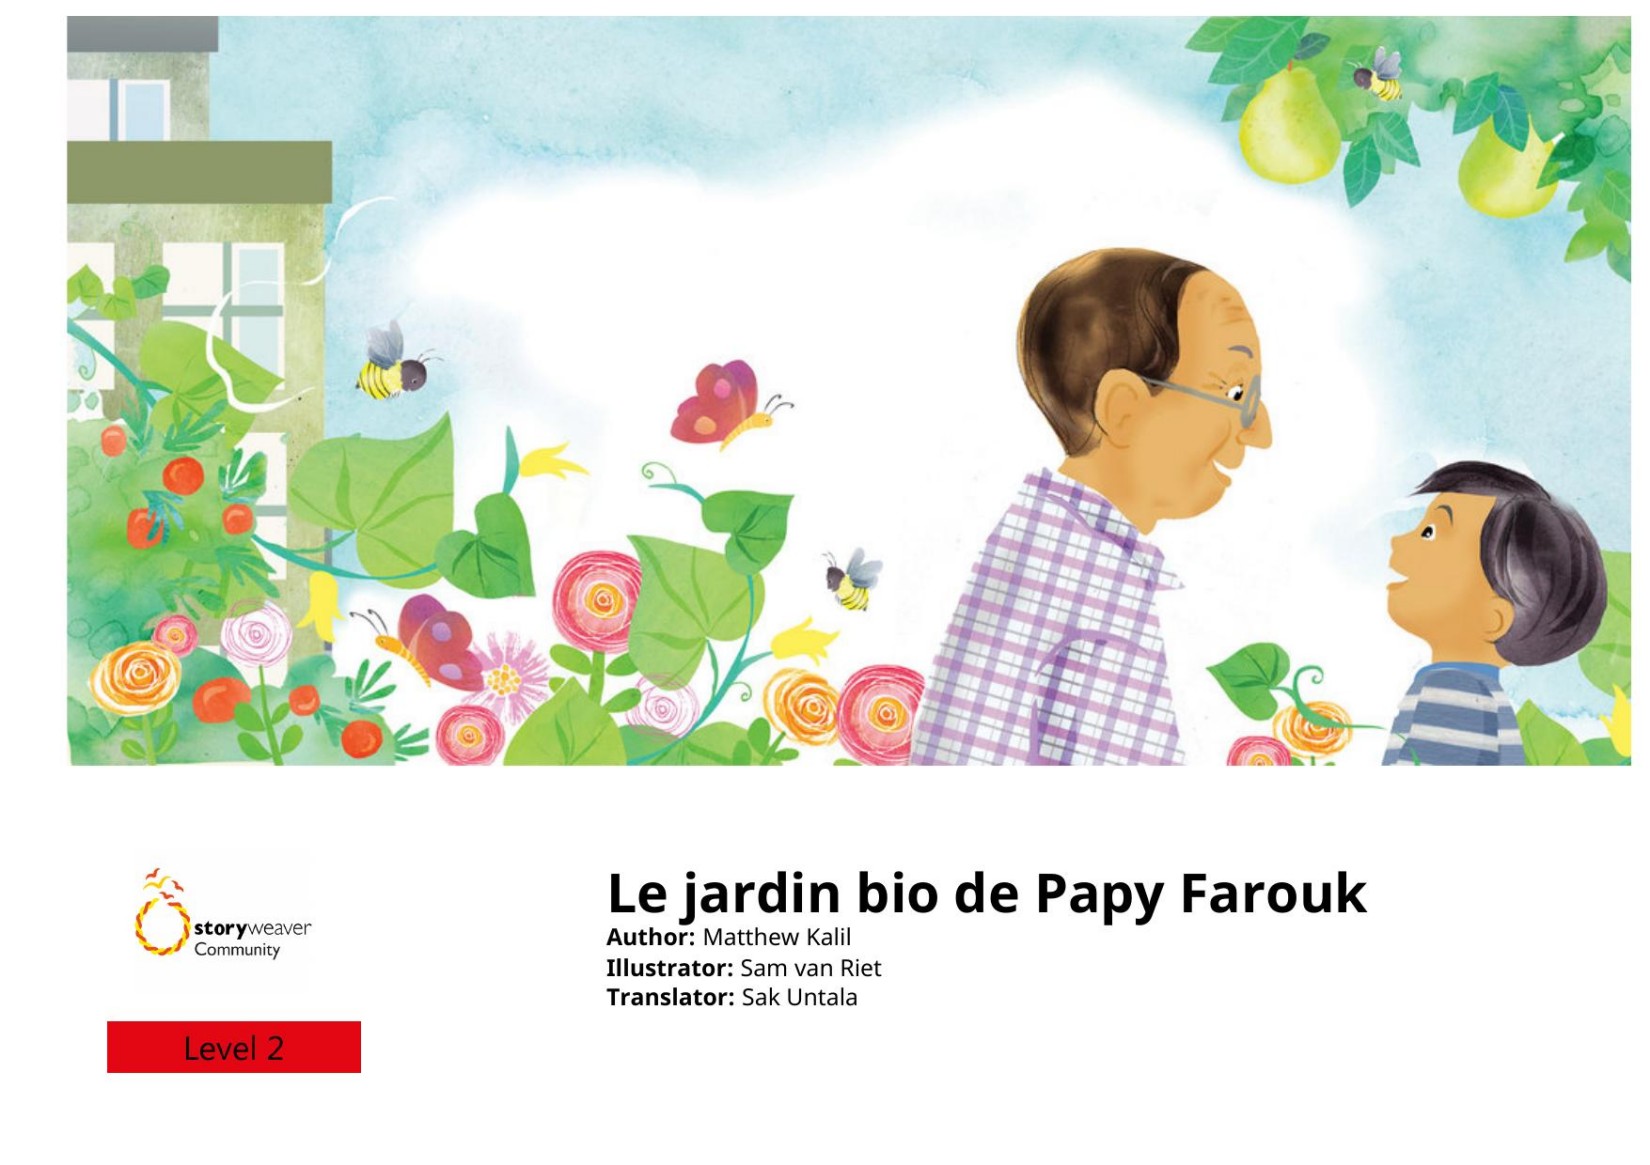 Le jardin bio de Papy Farouk